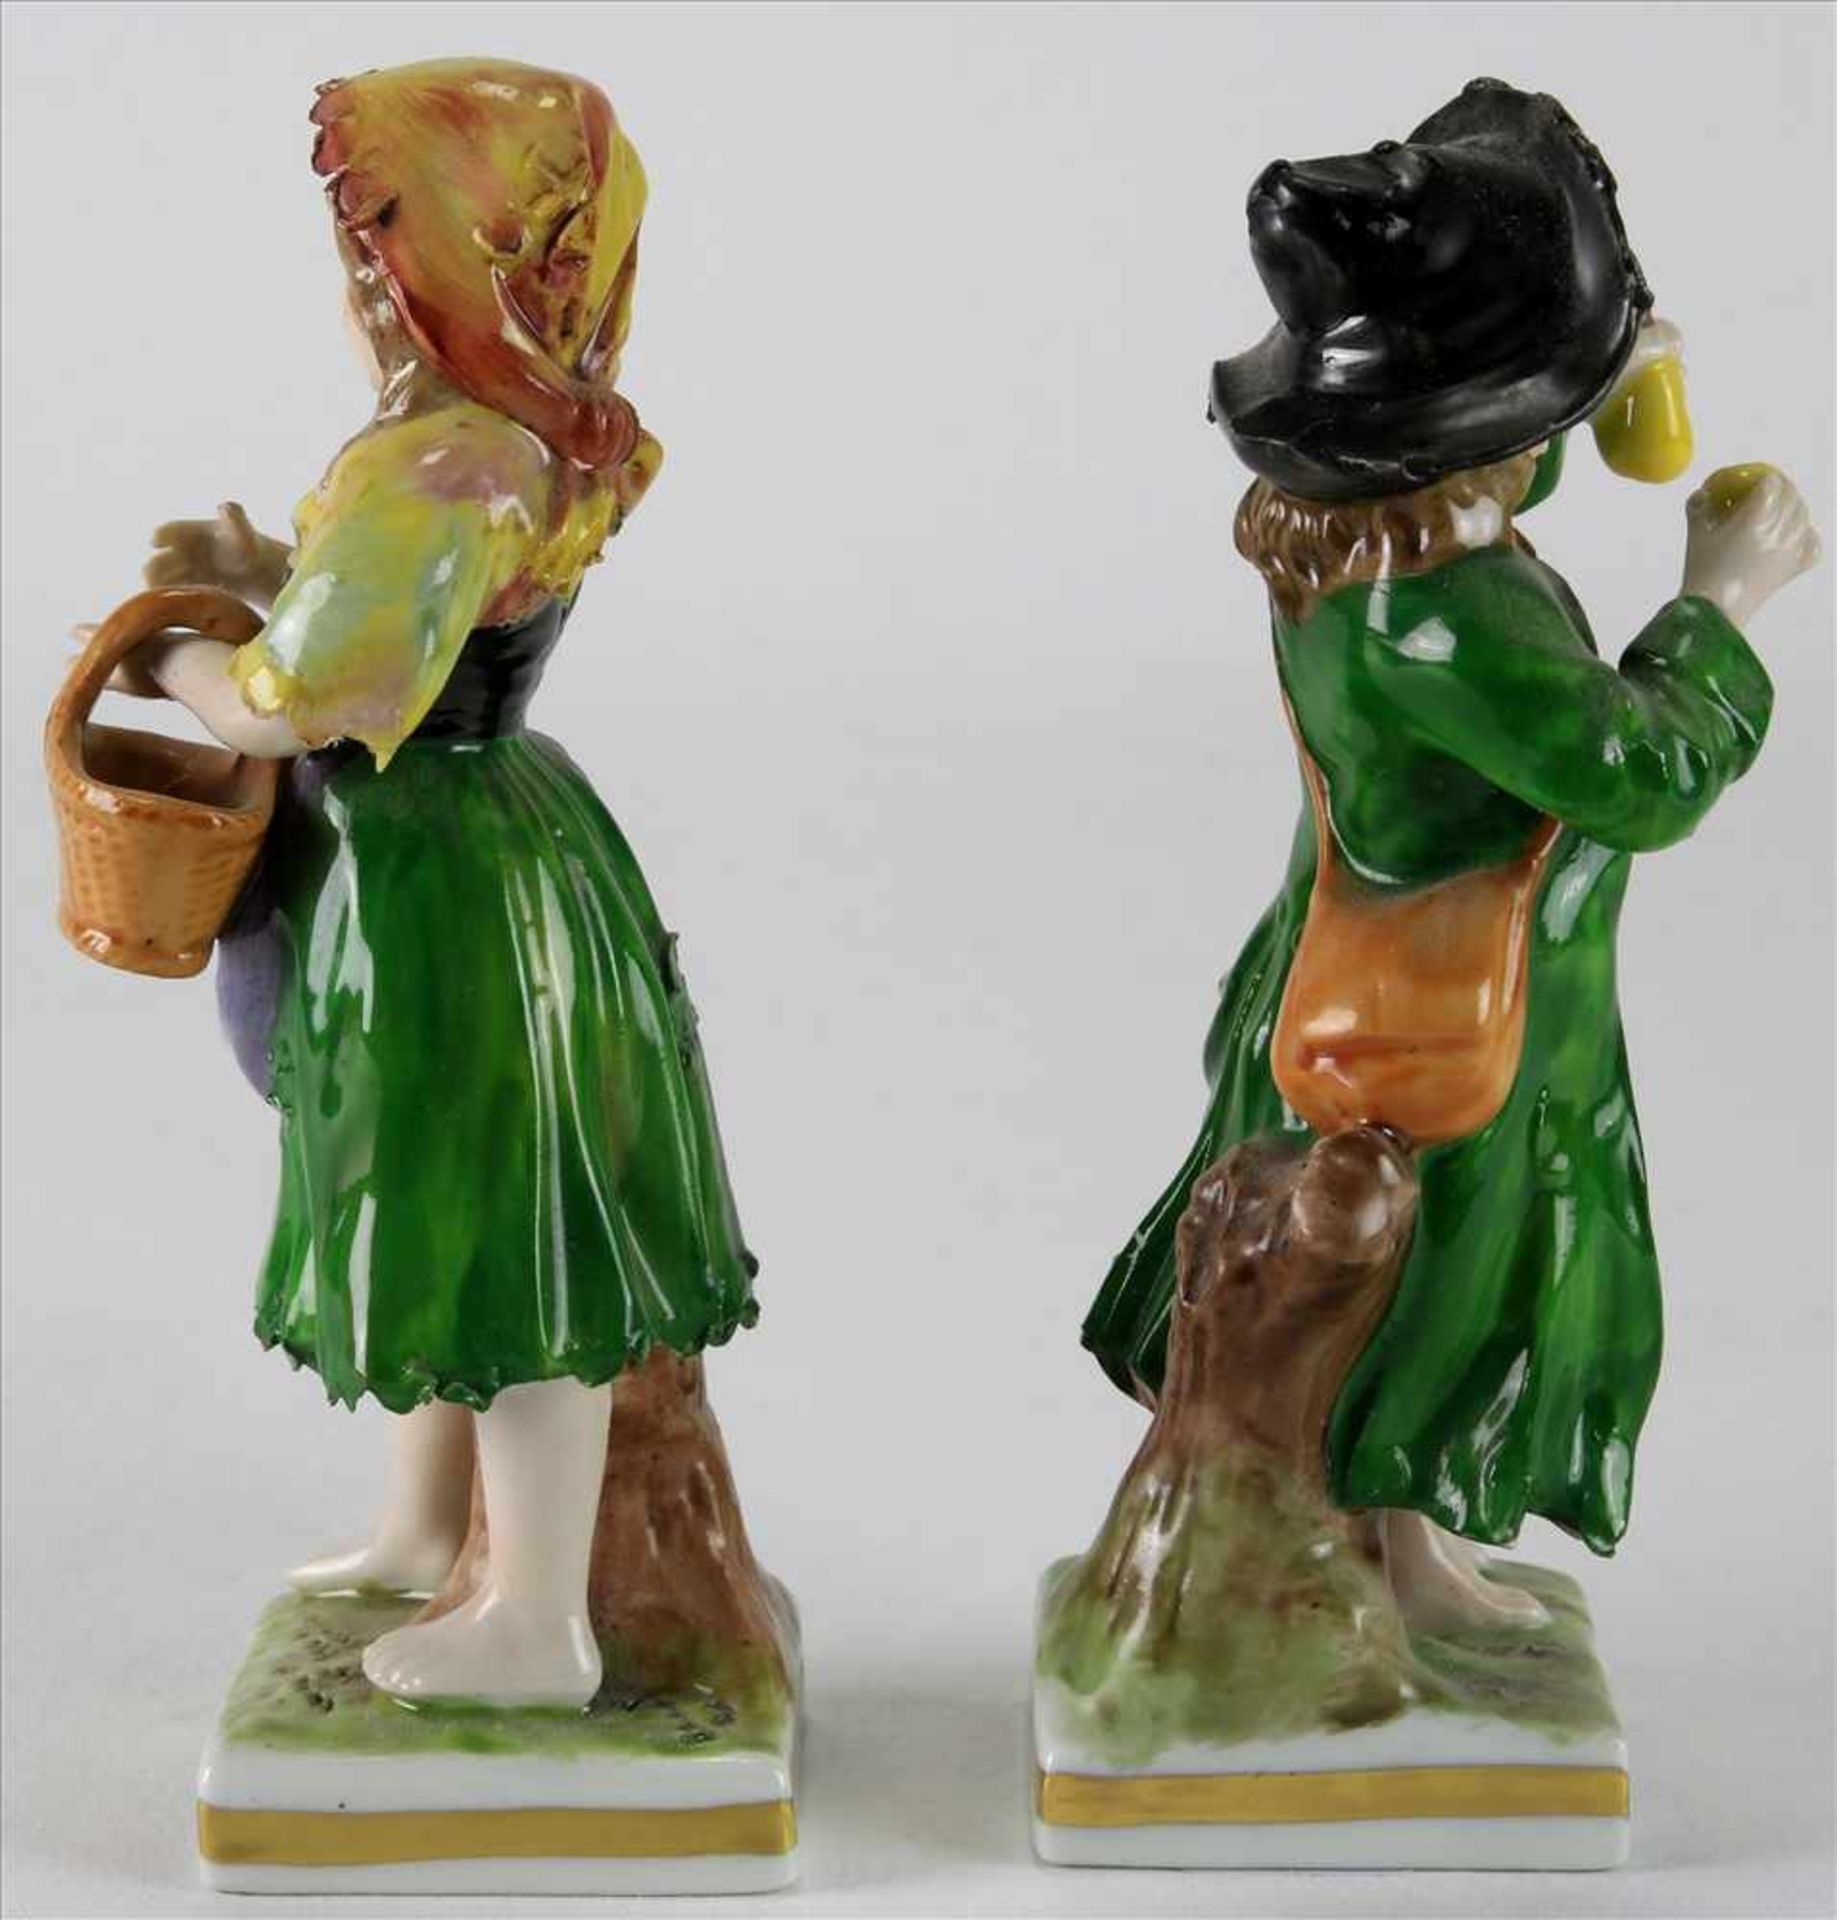 Paar PorzellanfigurenRudolstadt um 1900. Junge mit Äpfeln und Mädchen mit Korb. Polychrome Staffage. - Bild 4 aus 5